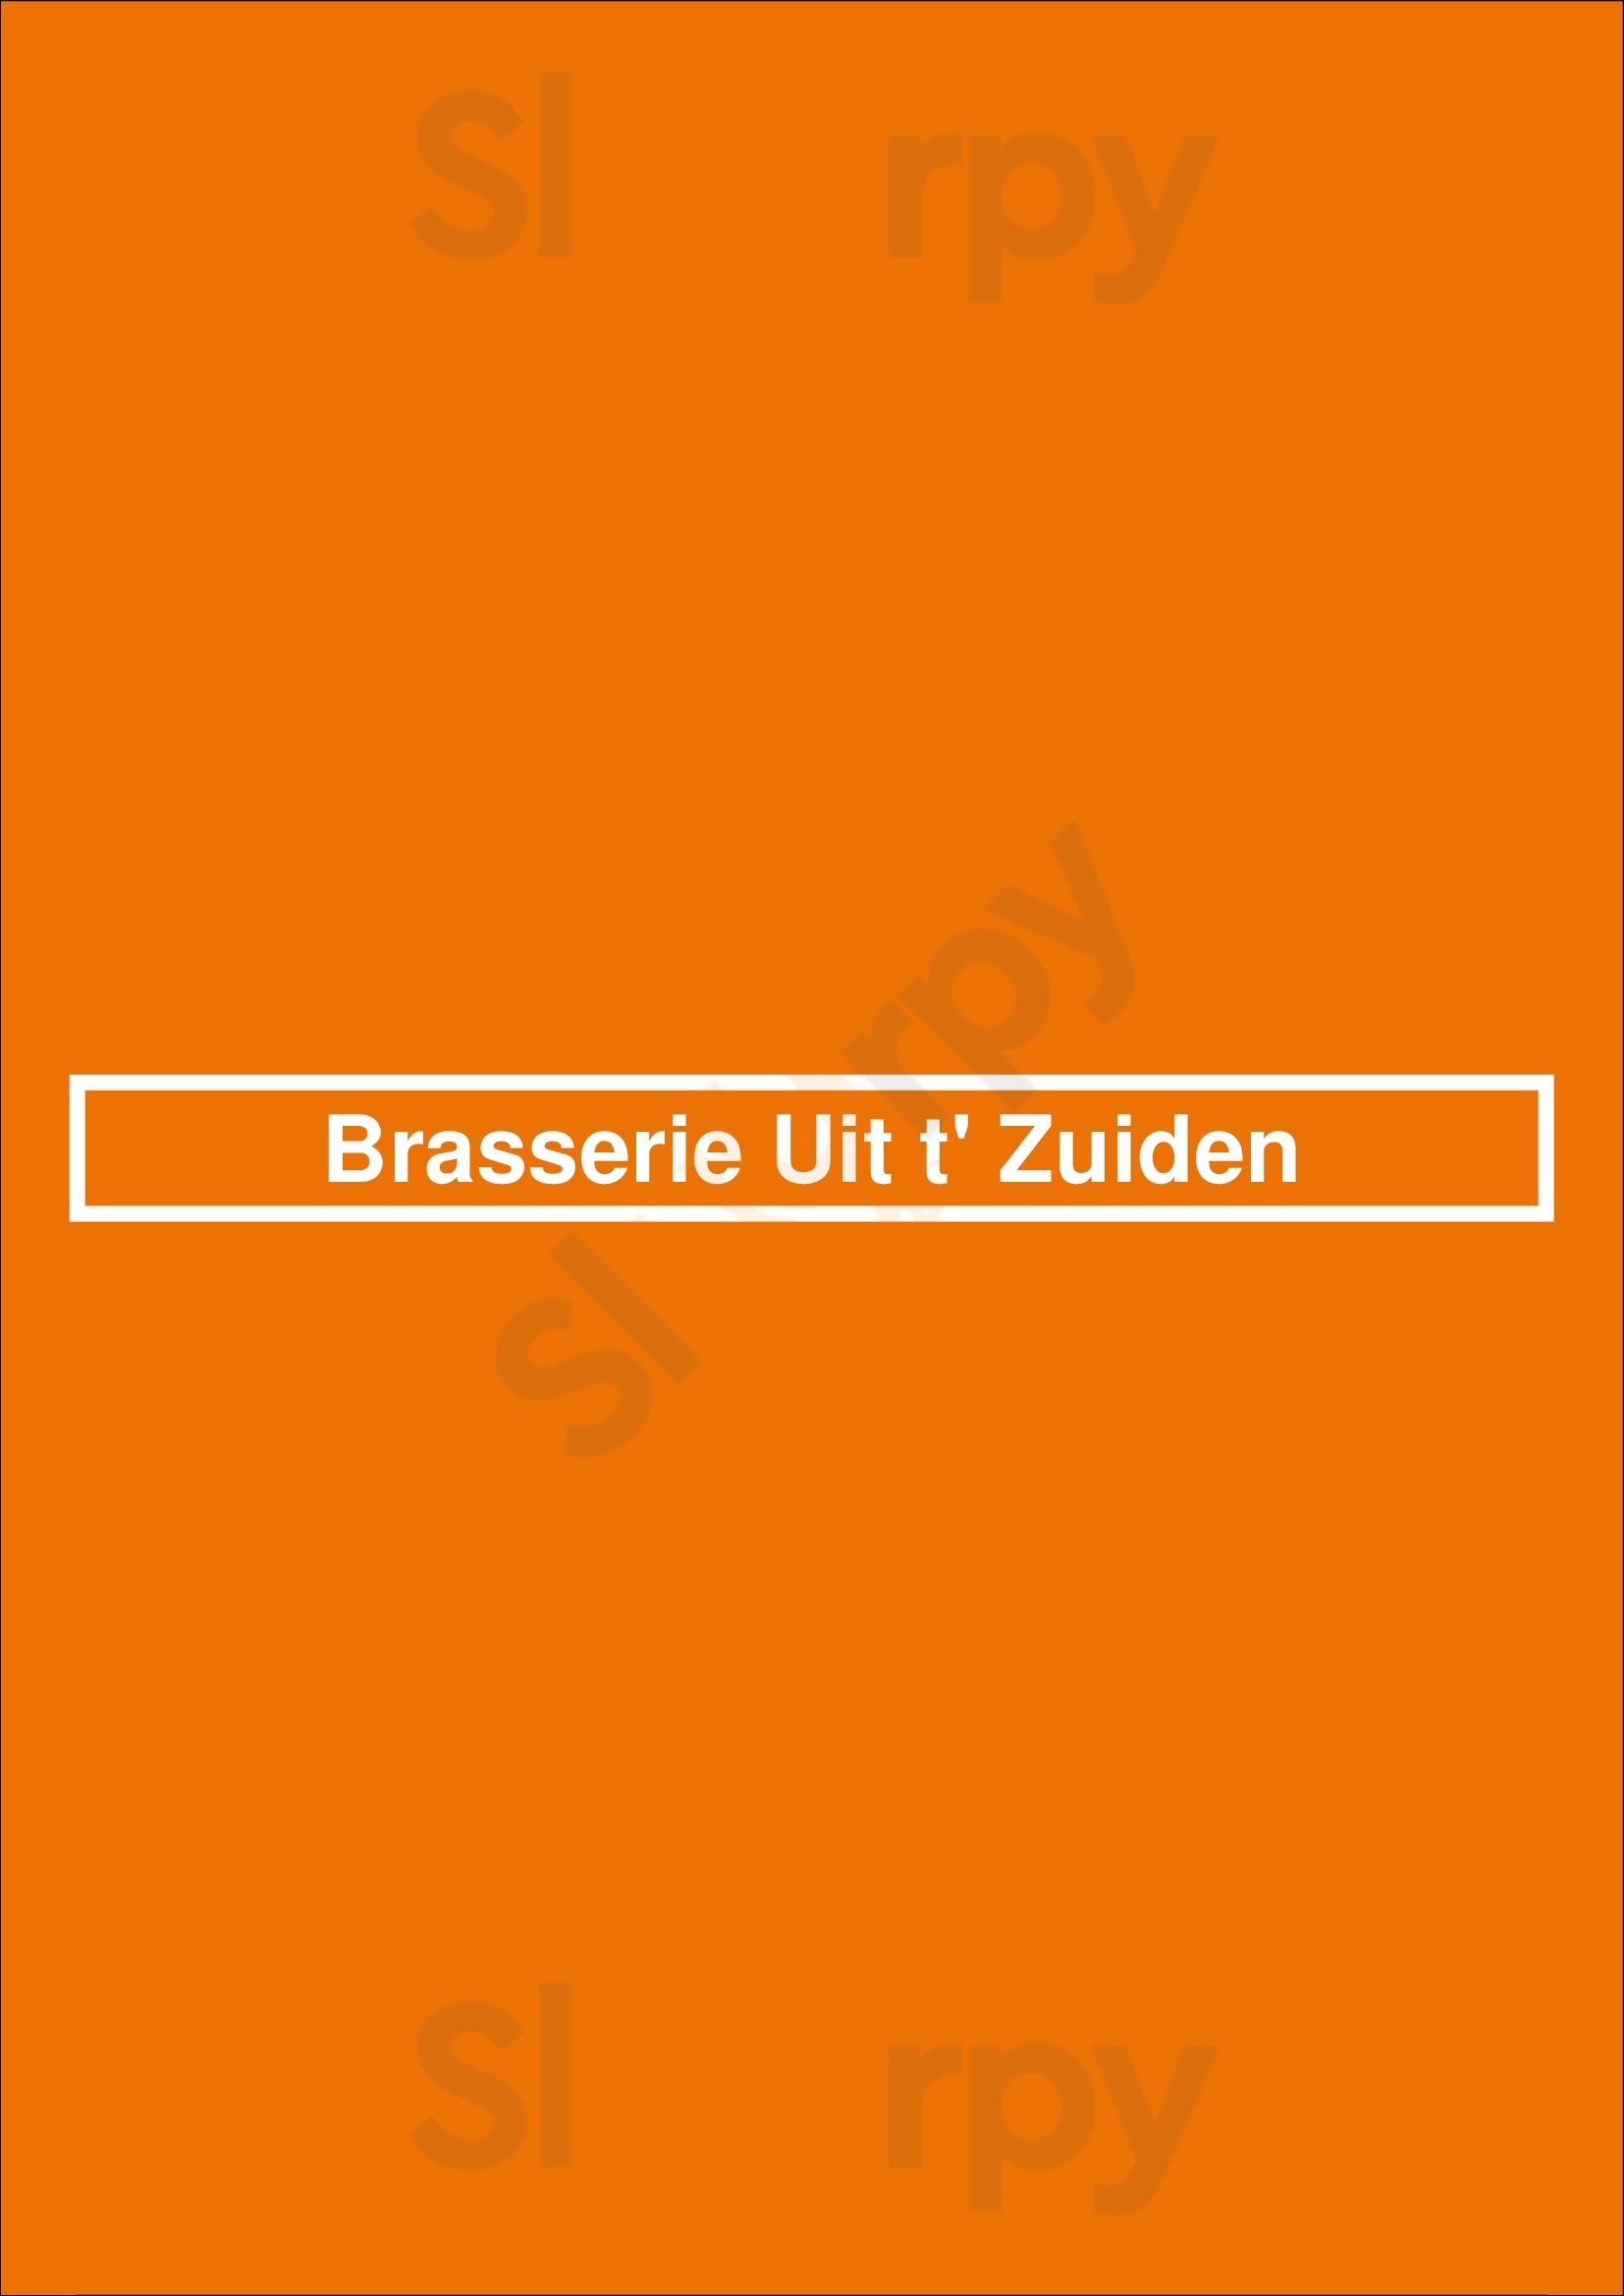 Brasserie Uit T' Zuiden Rotterdam Menu - 1